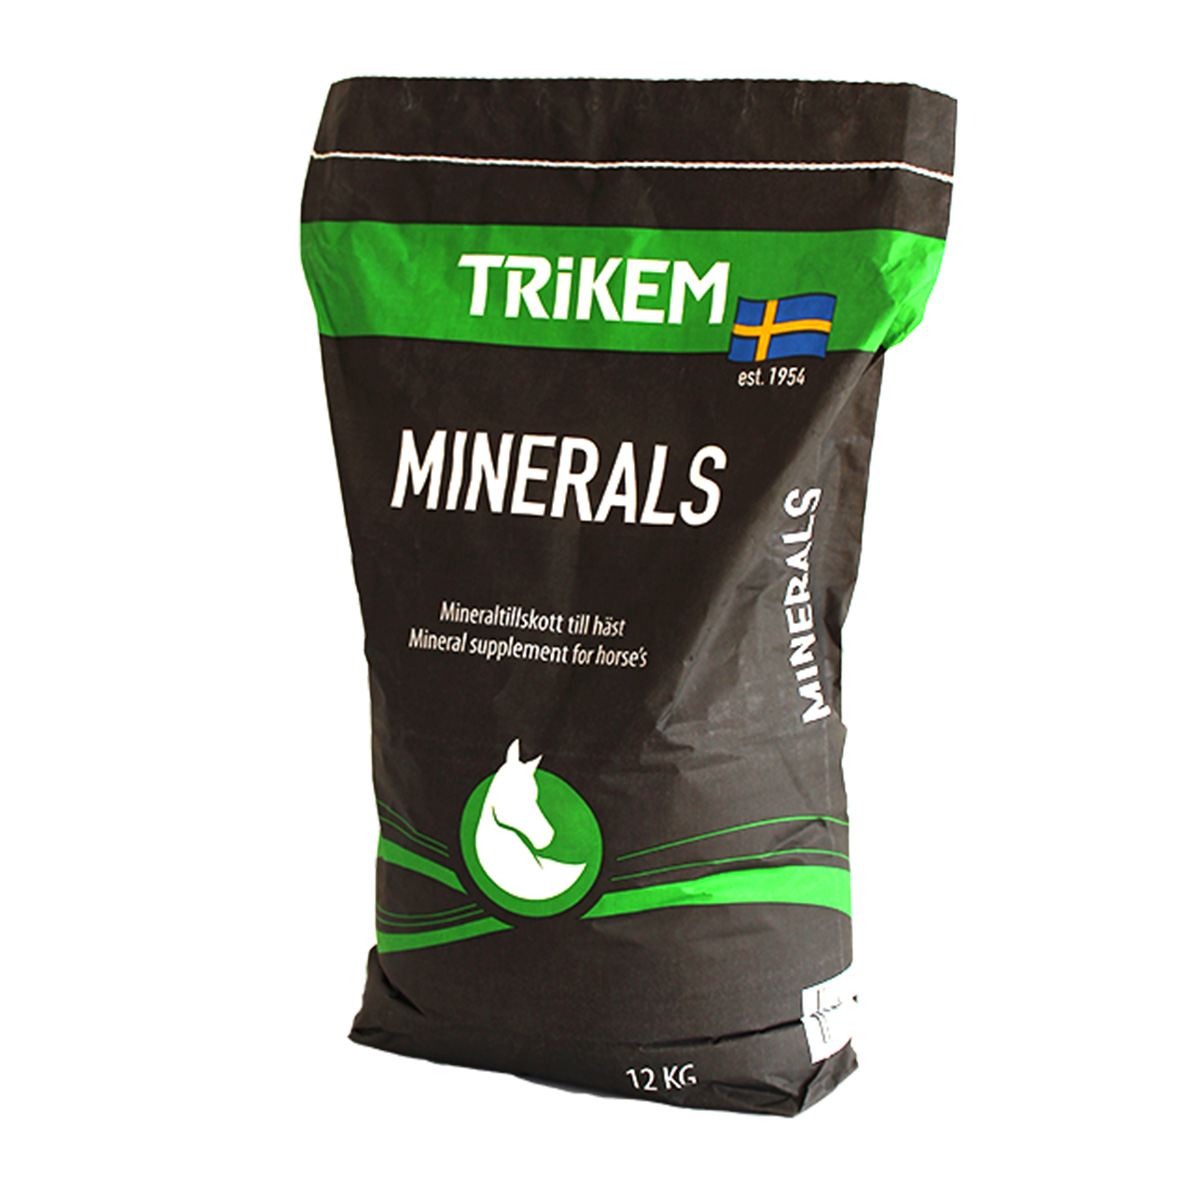 Trikem minerals, 12 kg